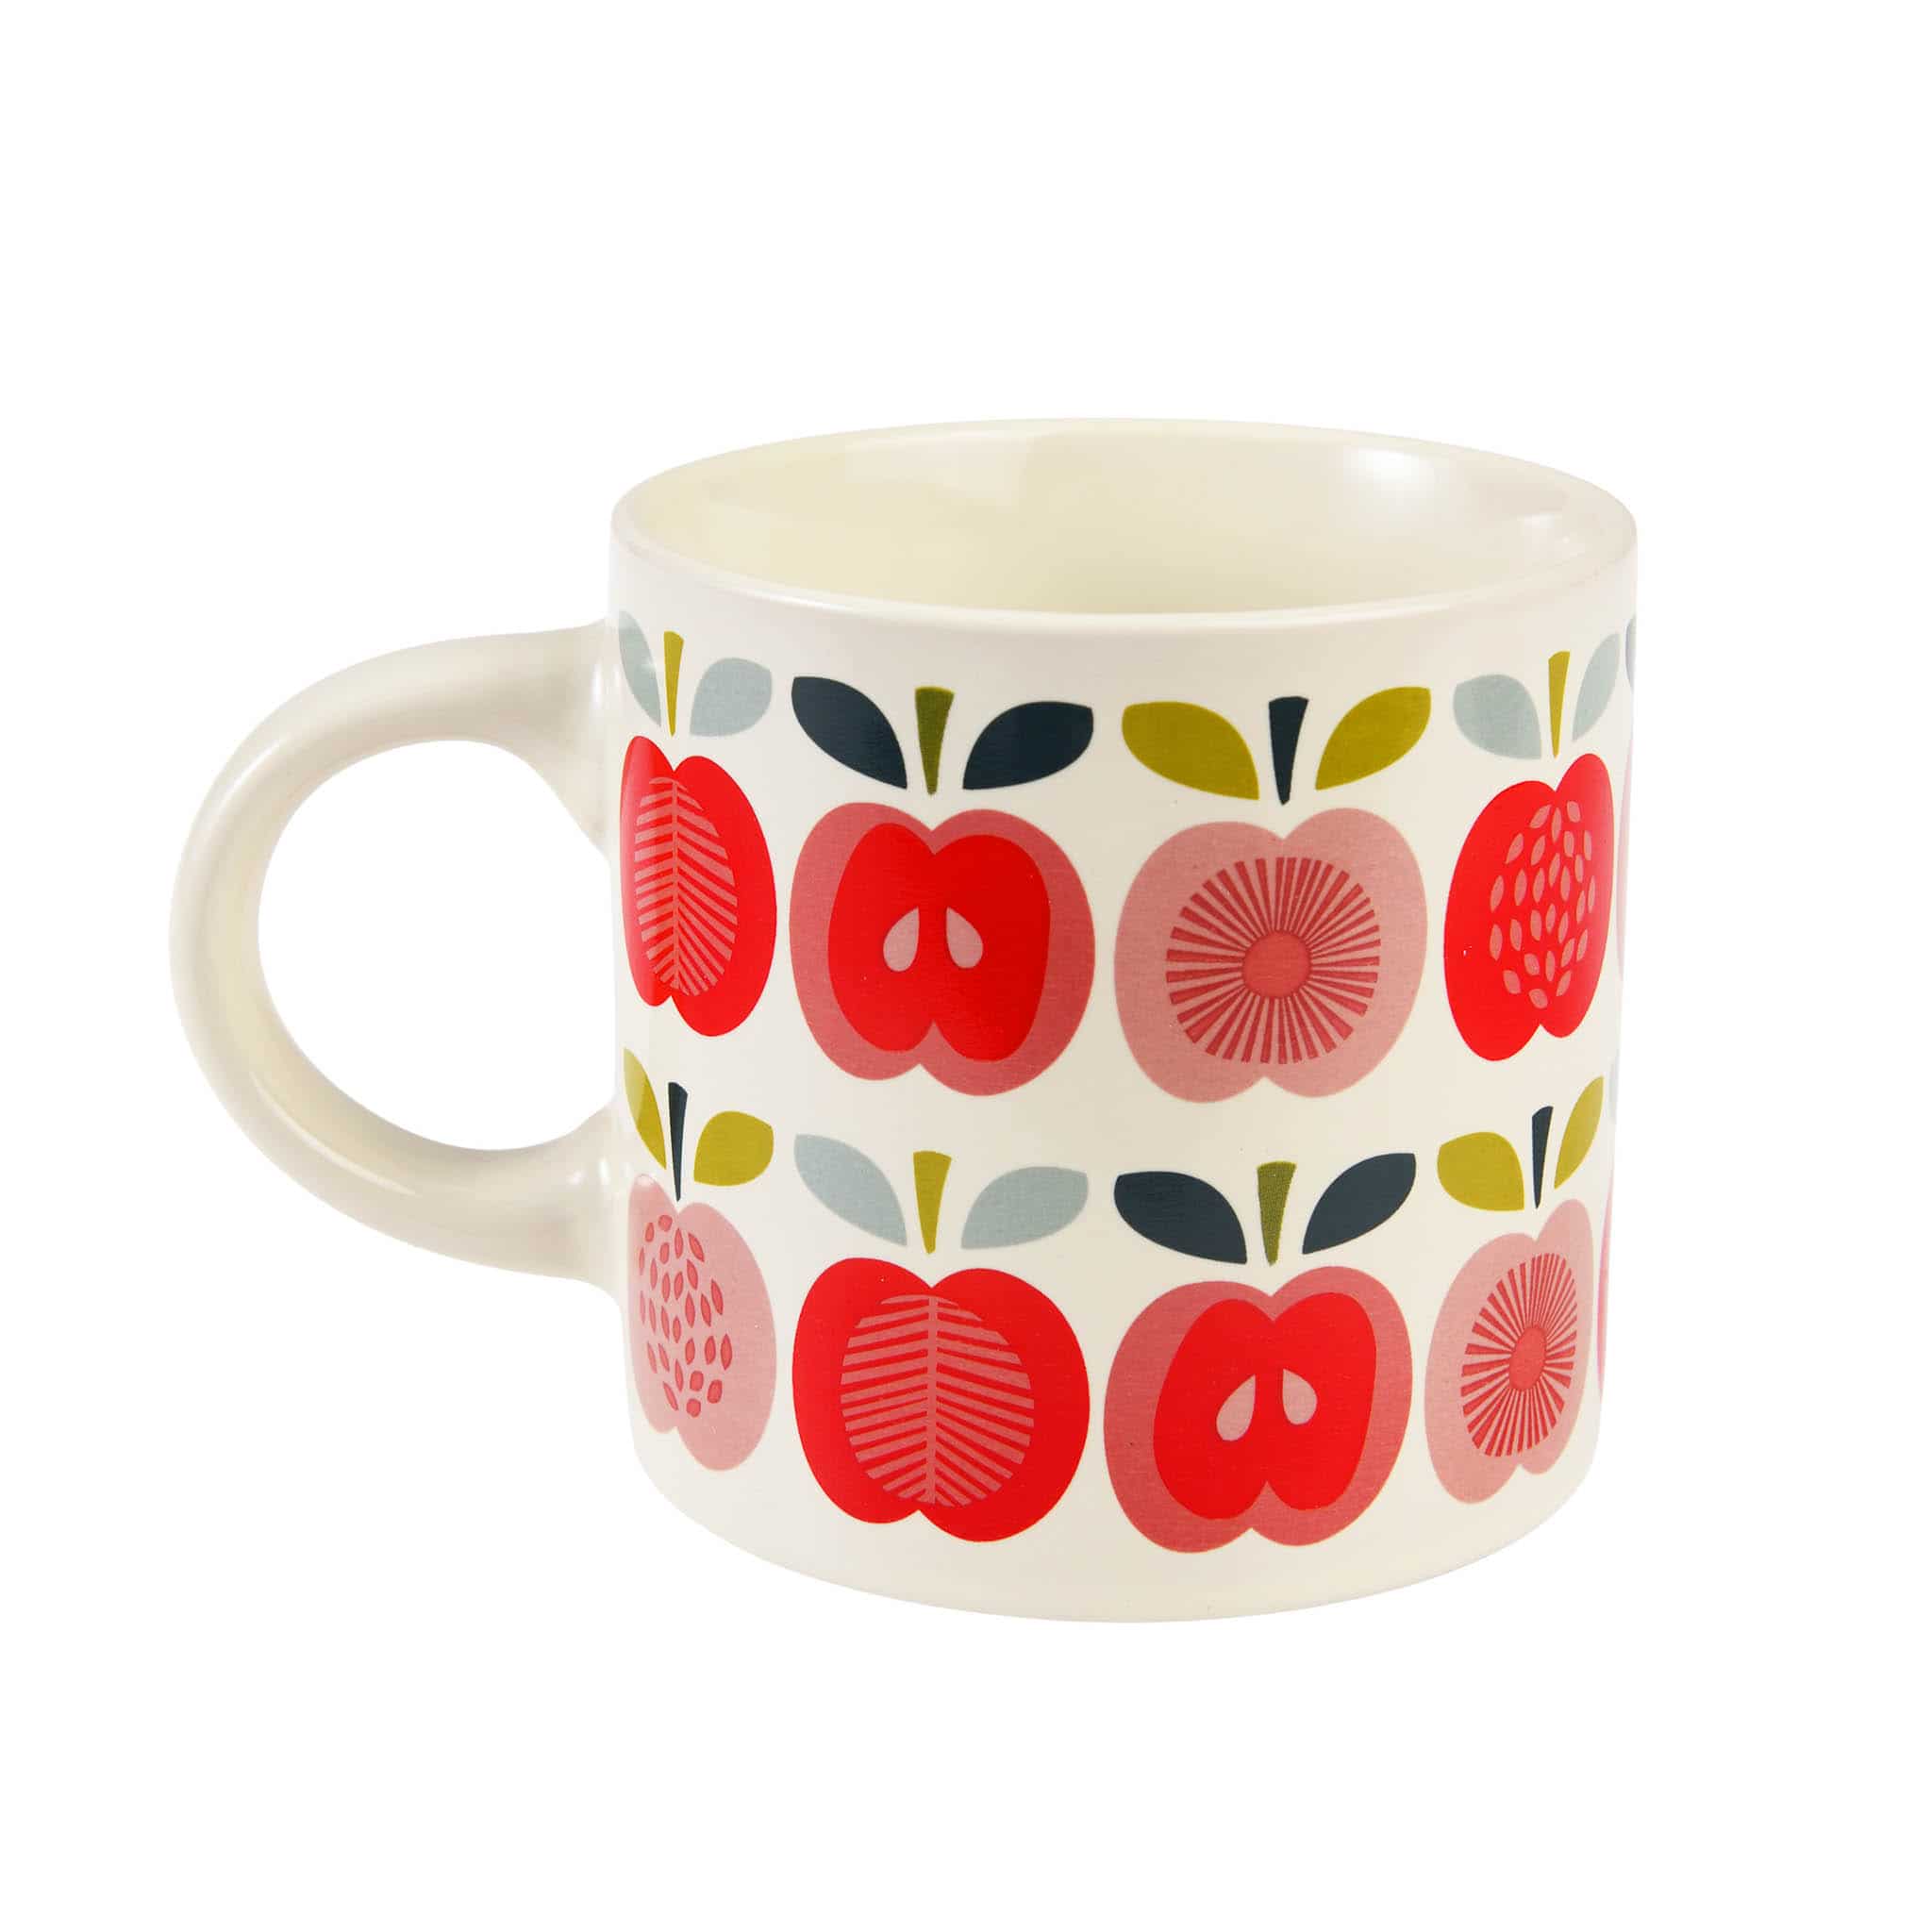 Vintage Apples Mug, 350ml